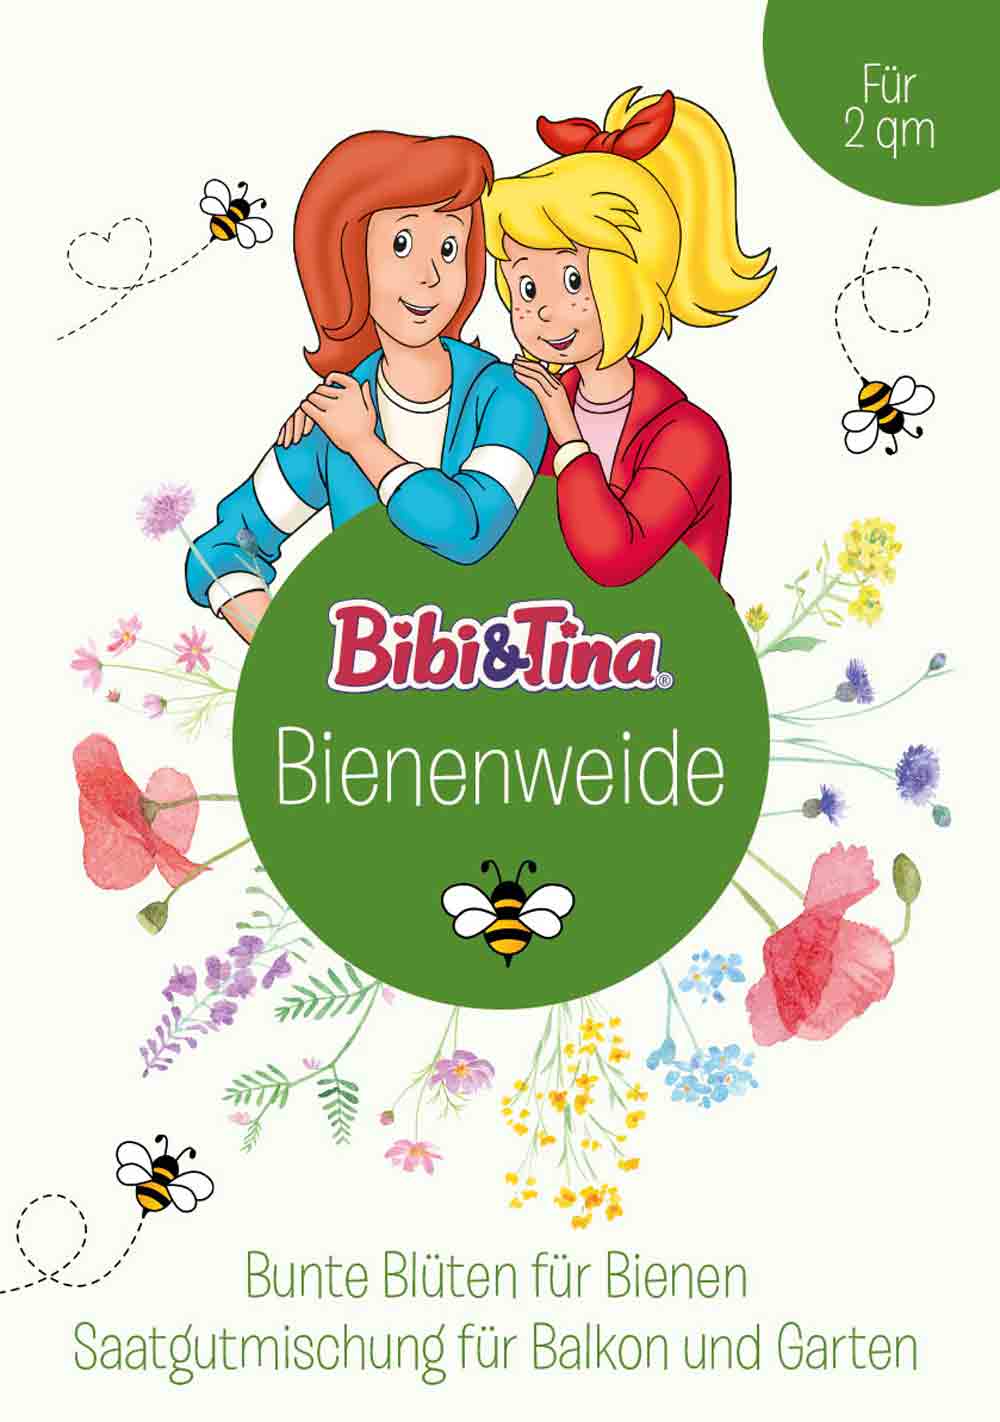 Weltbienentag: Bibi & Tina verschenken 100.000 Saatgut Tütchen für Bienenweiden